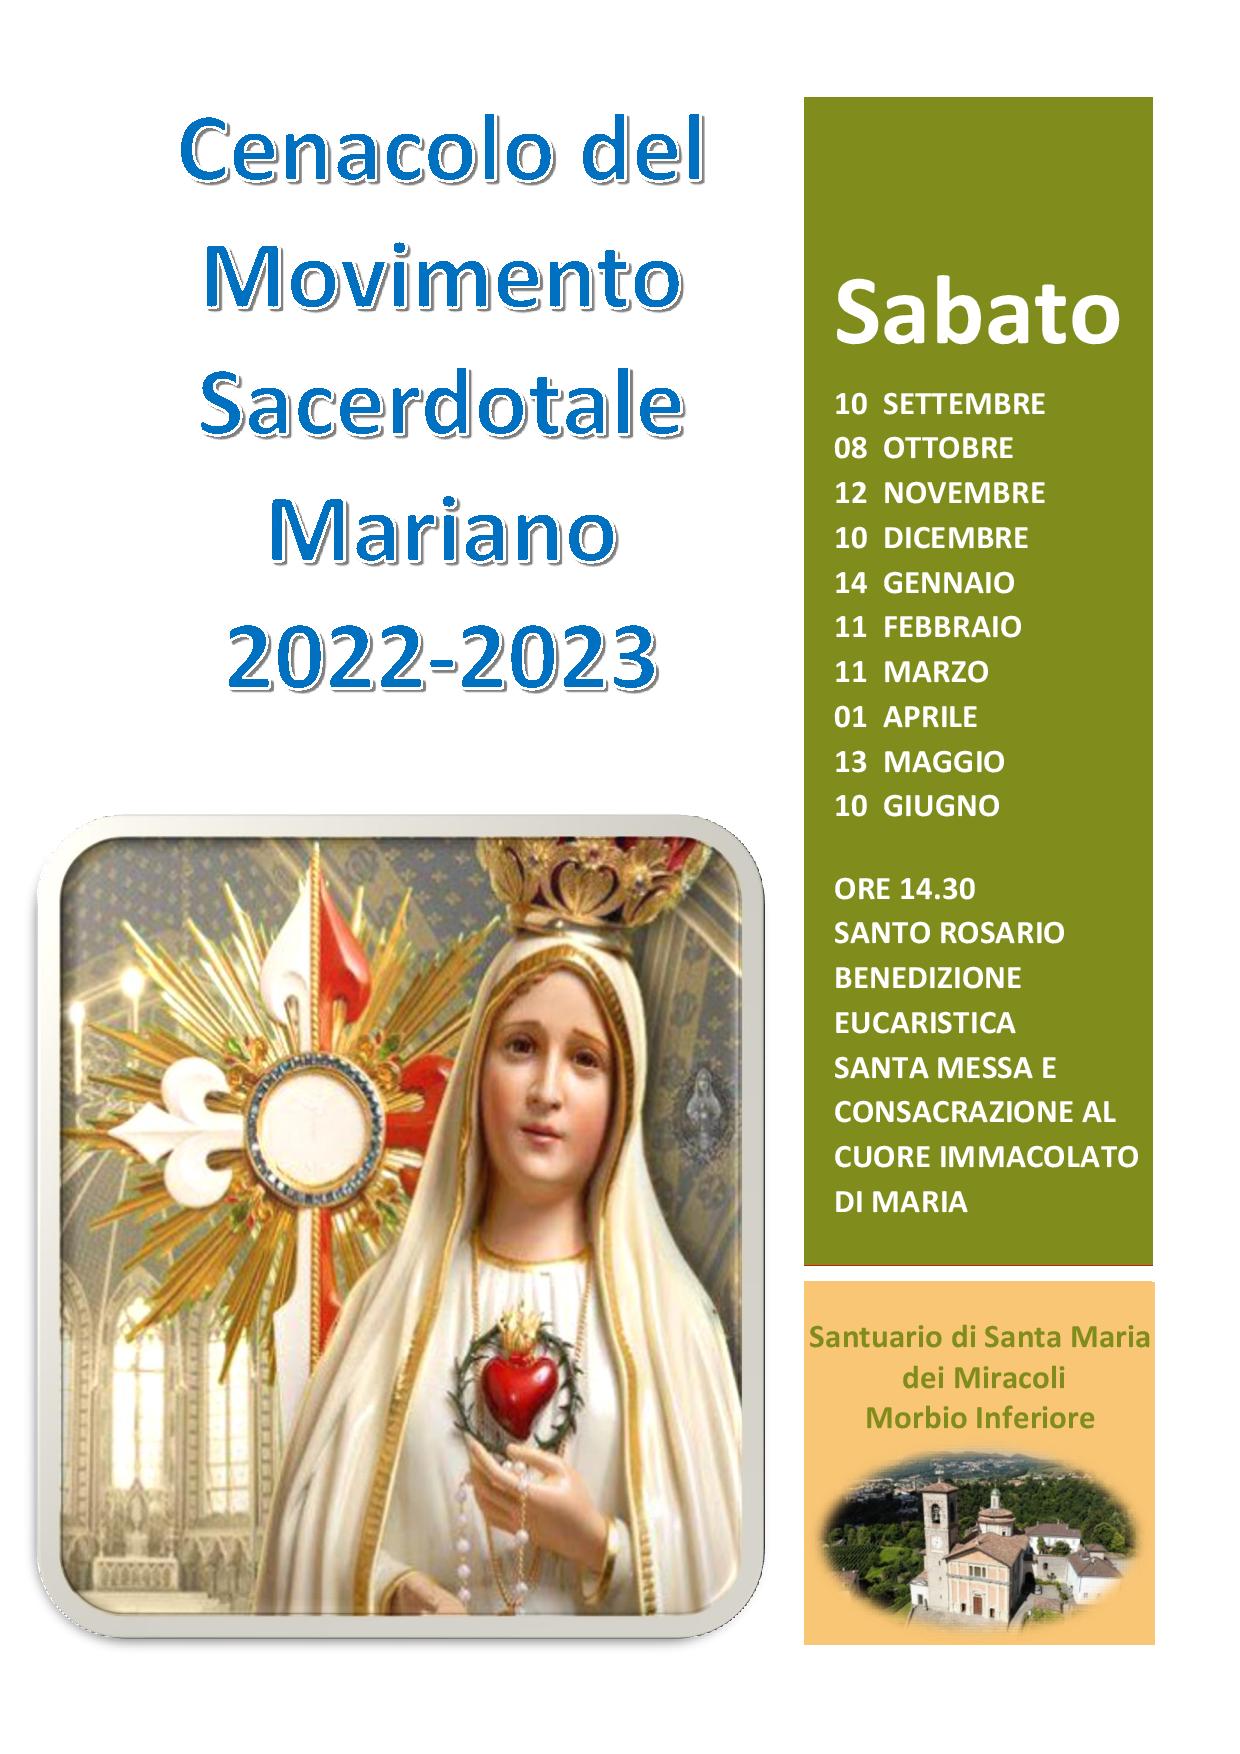 Cenacolo del Movimento Sacerdotale Mariano 2022-2023